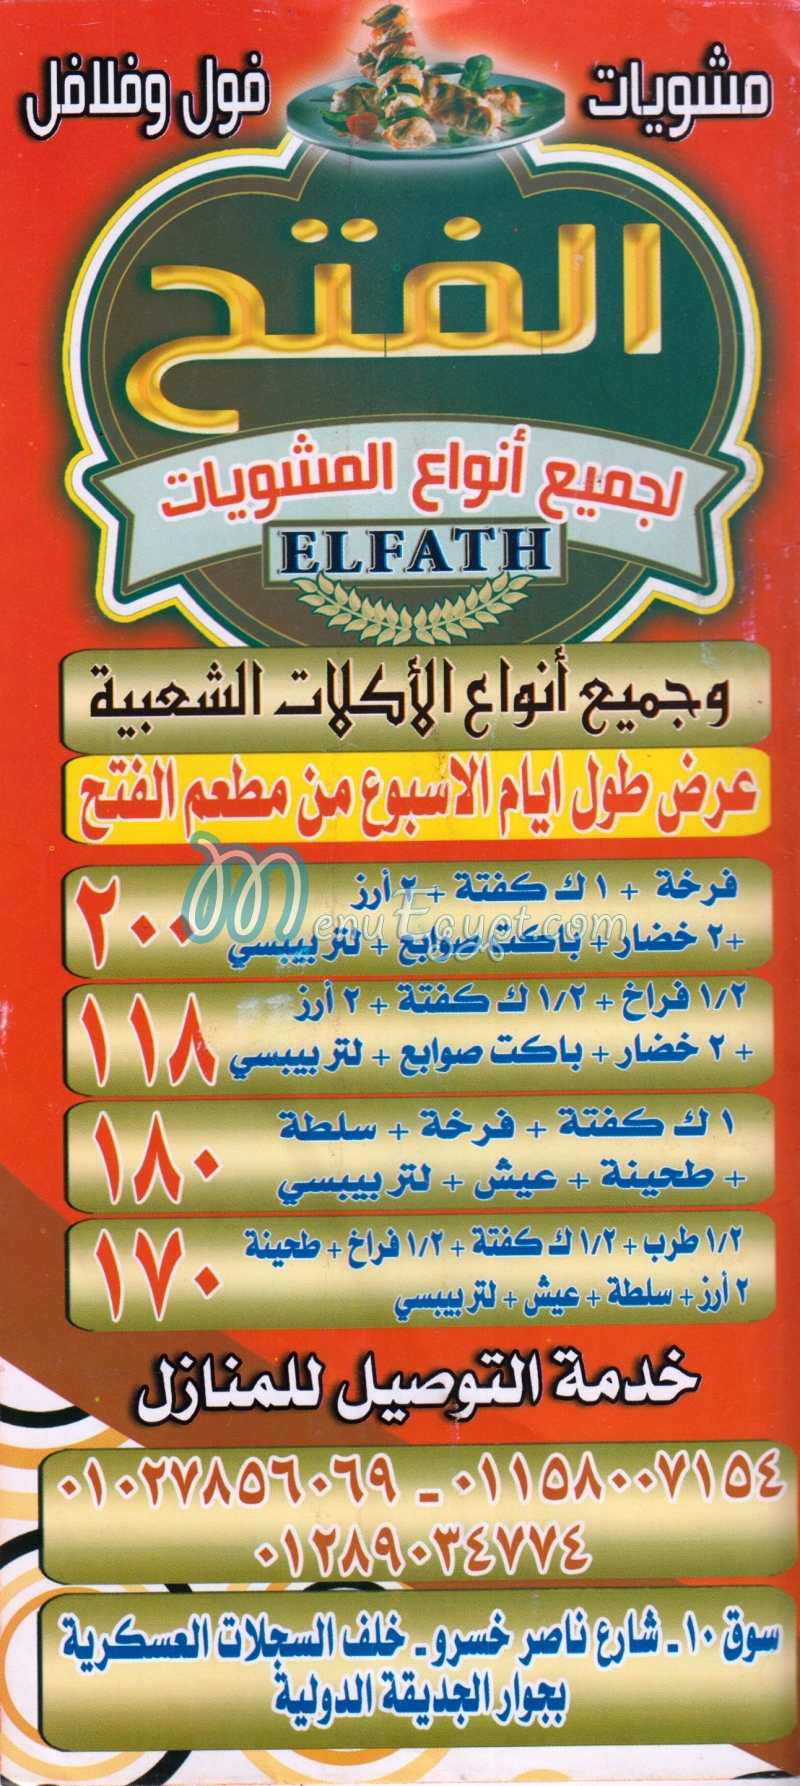 El Fath Grill menu